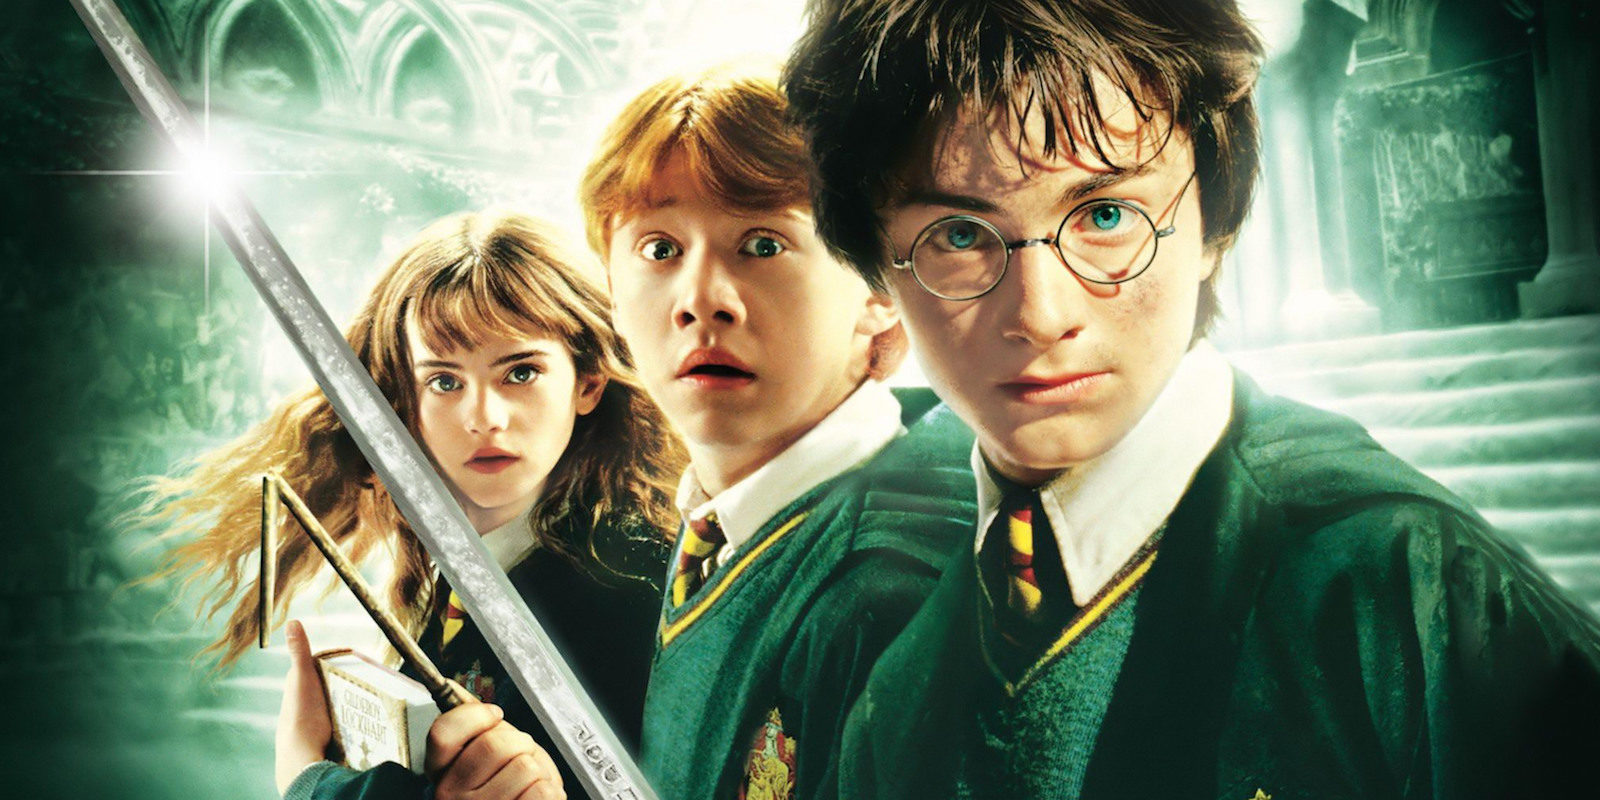 La banda sonora de 'Harry Potter' estará disponible en vinilo al completo